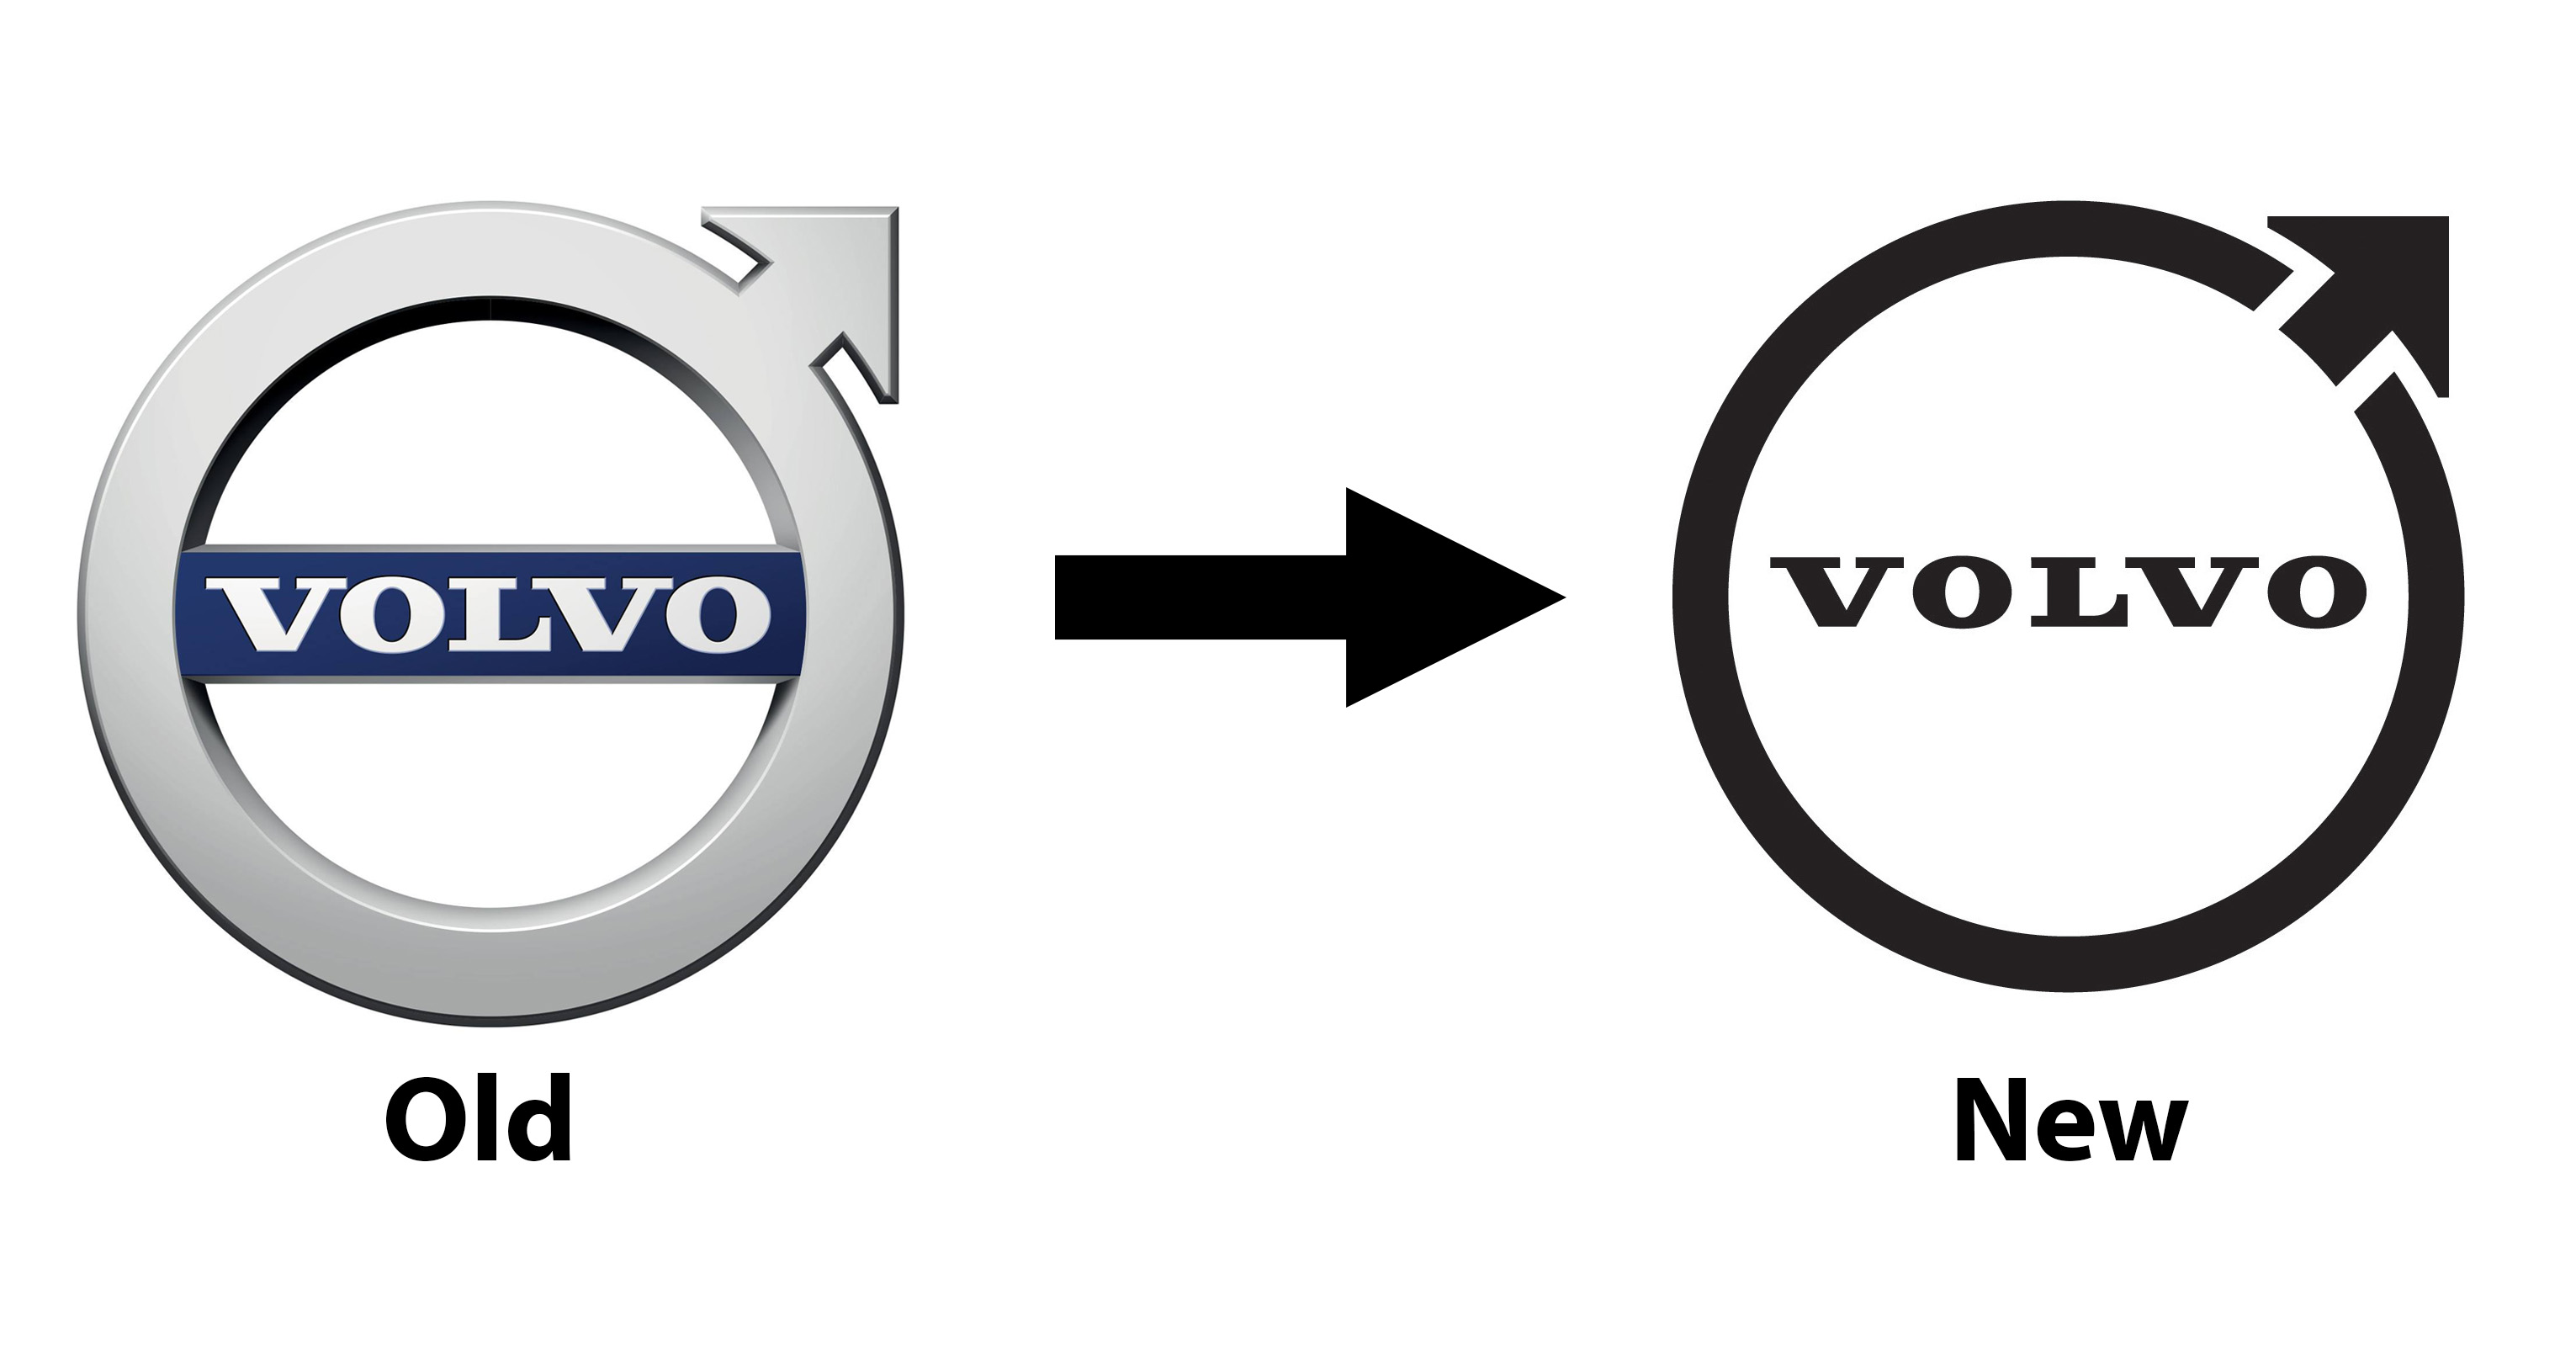 Volvo telah memperkenalkan reka bentuk baru untuk logo Iron Mark yang terkenal, yang telah dilancarkan ke semua bahagian pembuat kereta Sweden, termasuk di Malaysia. Berbanding dengan reka bentuk sebelumnya, logo baru jauh lebih simple dengan gaya monokromnya, walaupun ia terus menggunakan jenis font yang sama seperti sebelumnya.